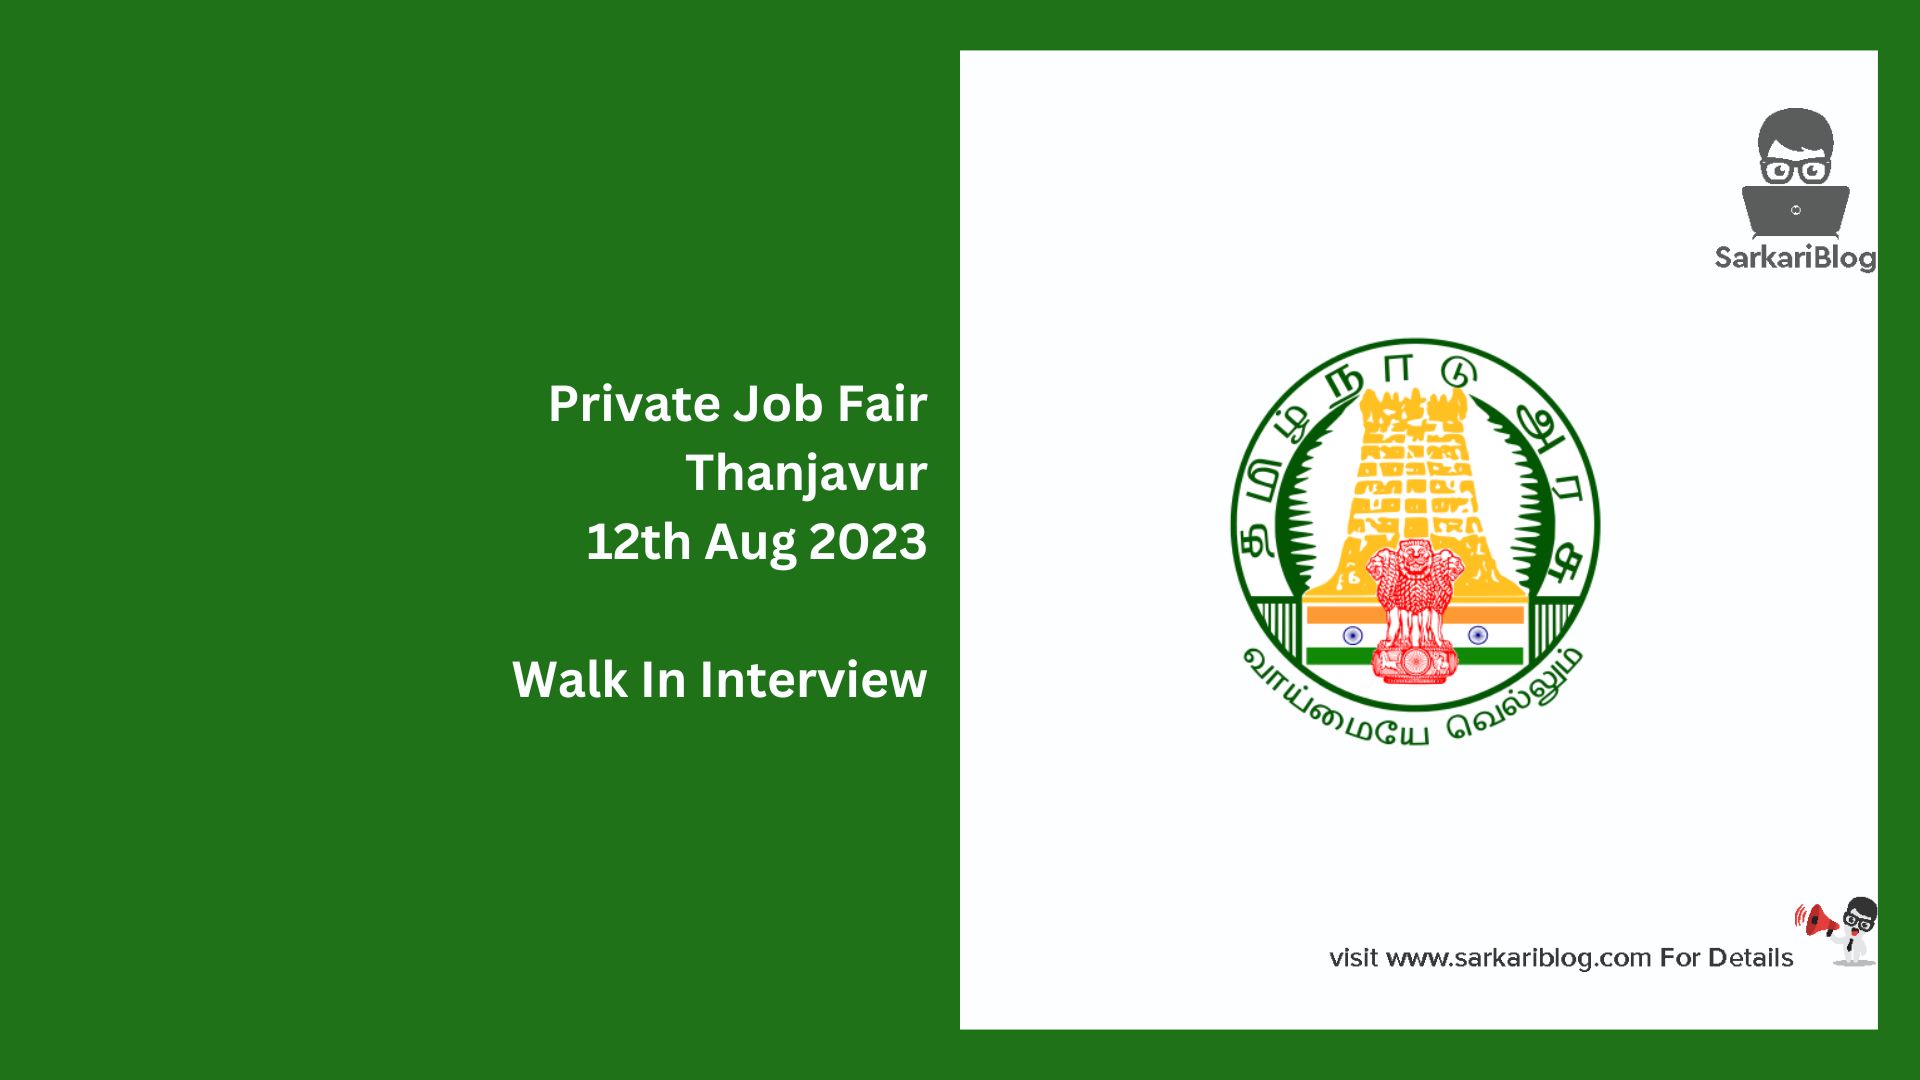 Private Job Fair Thanjavur 12th Aug 2023